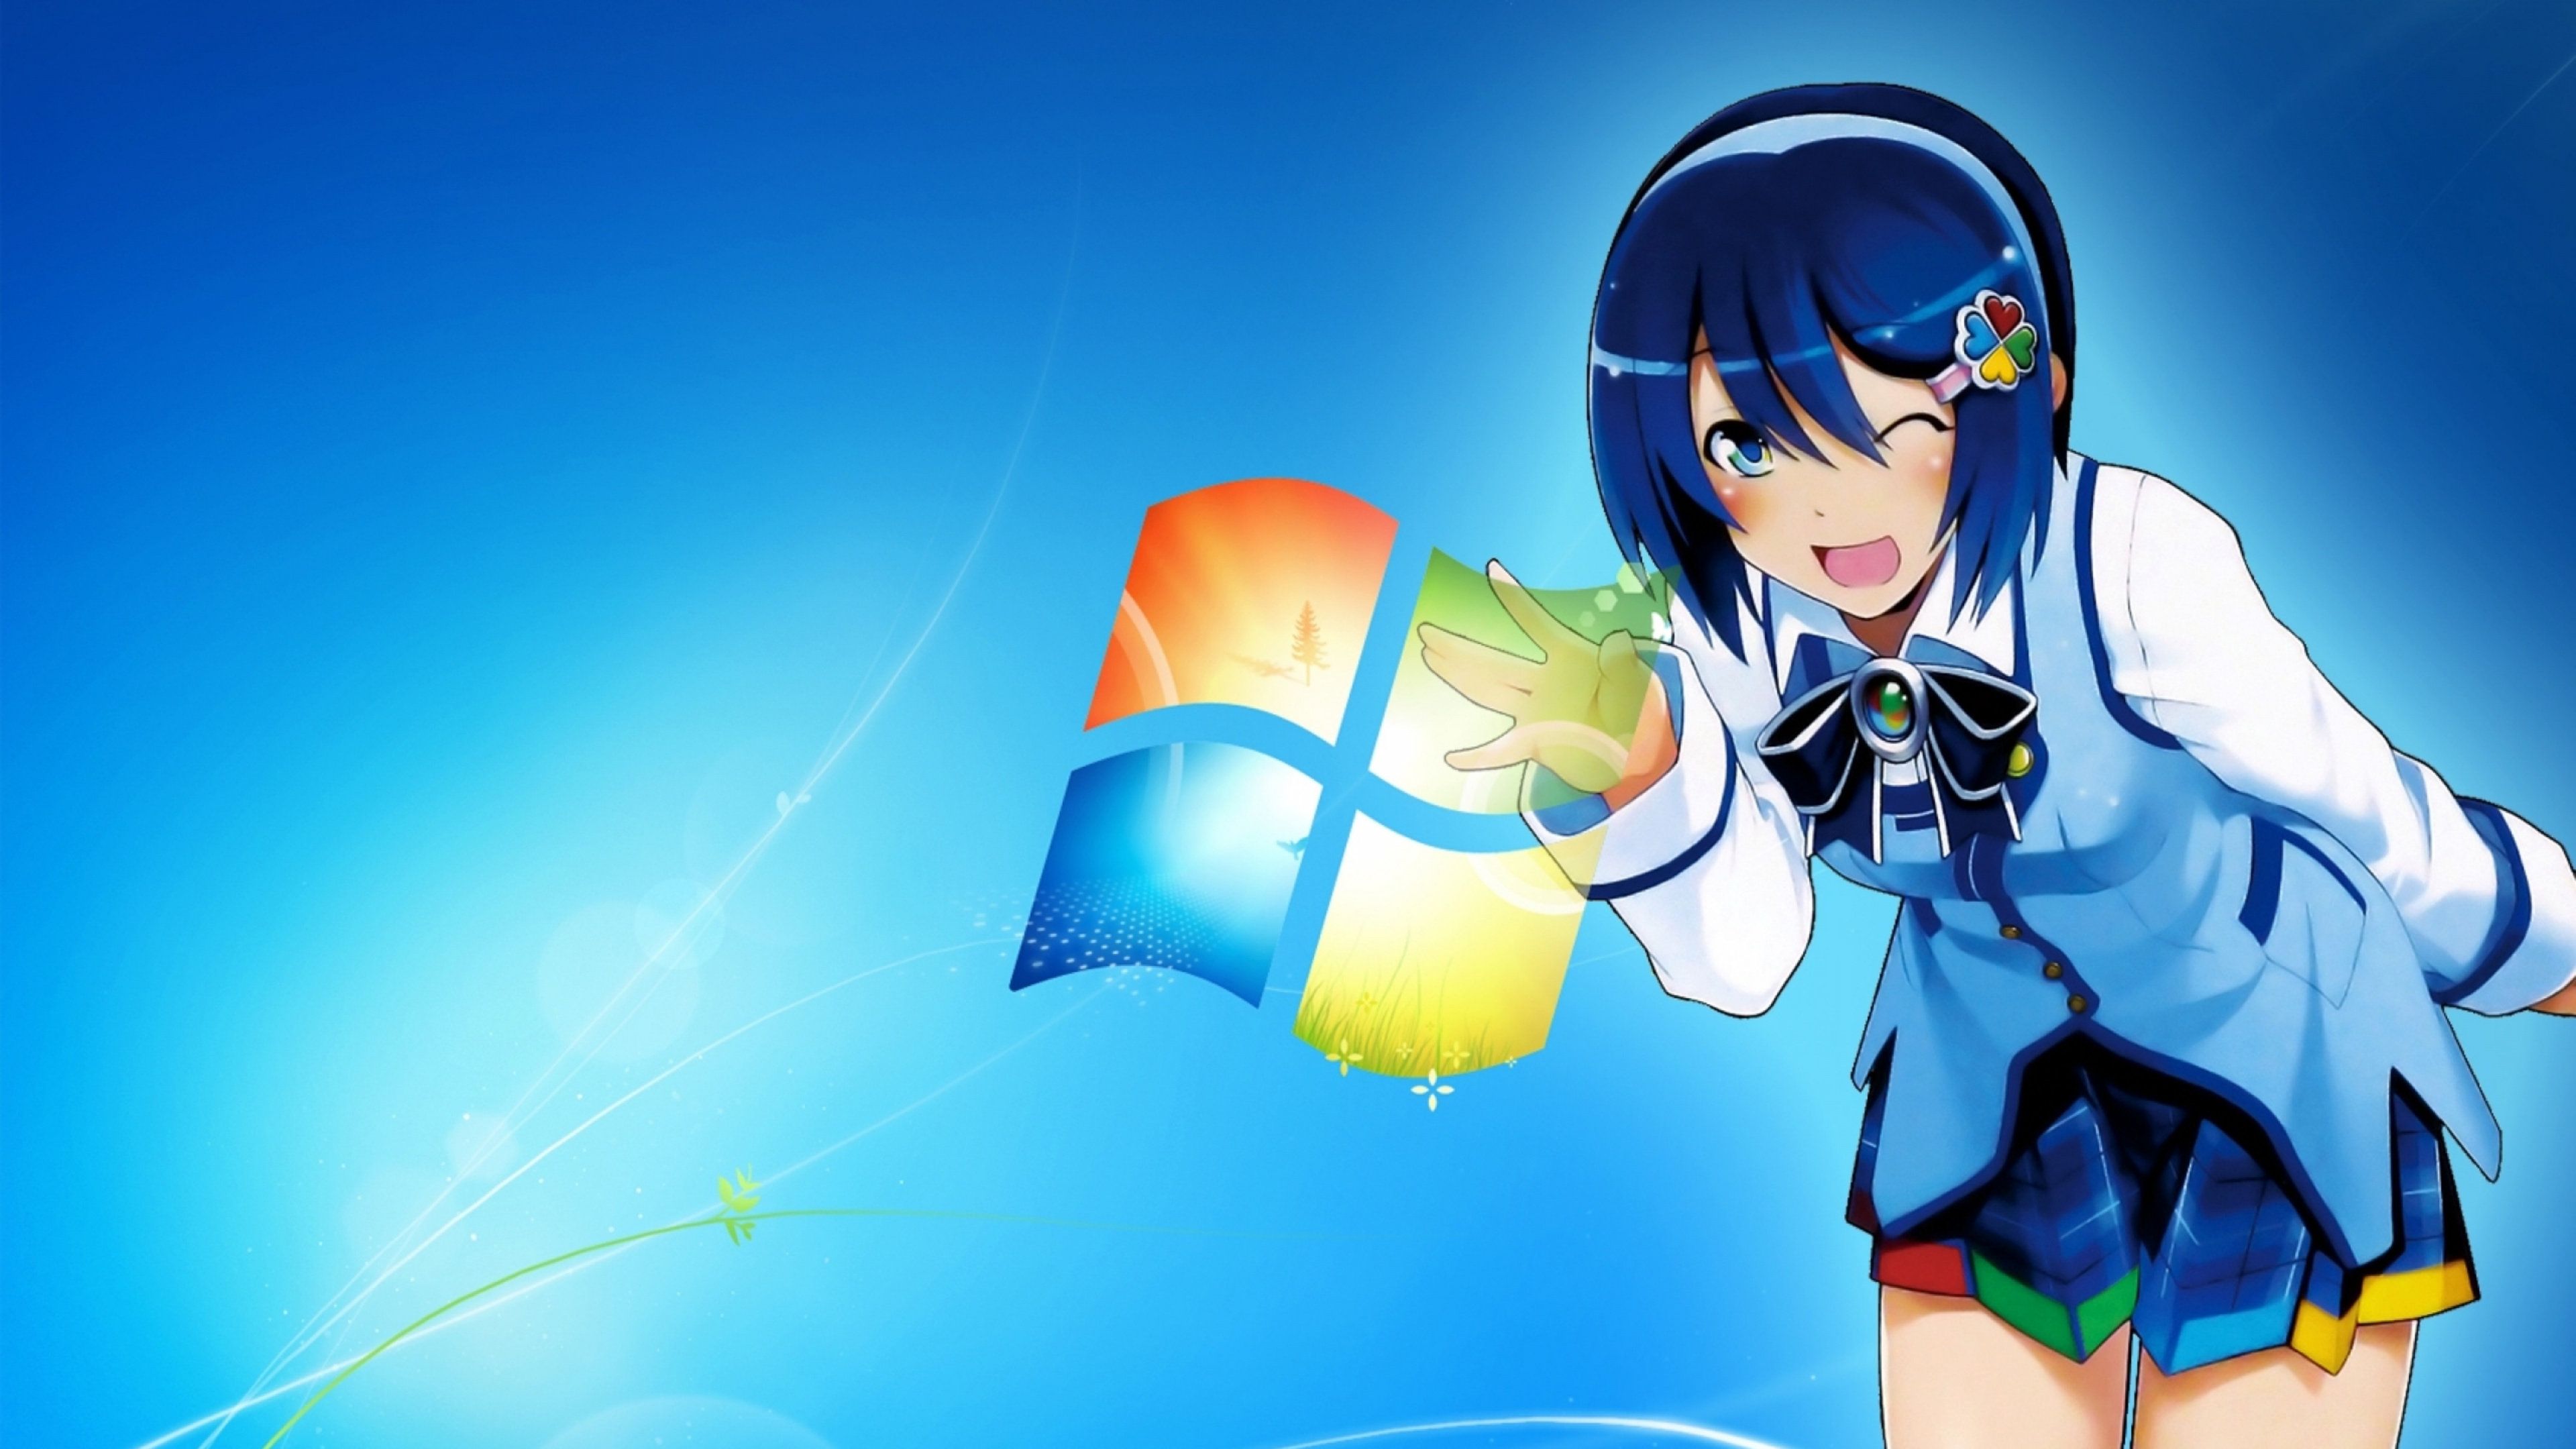 Mujer en Uniforme Escolar Azul y Blanco Personaje de Anime. Wallpaper in 3840x2160 Resolution